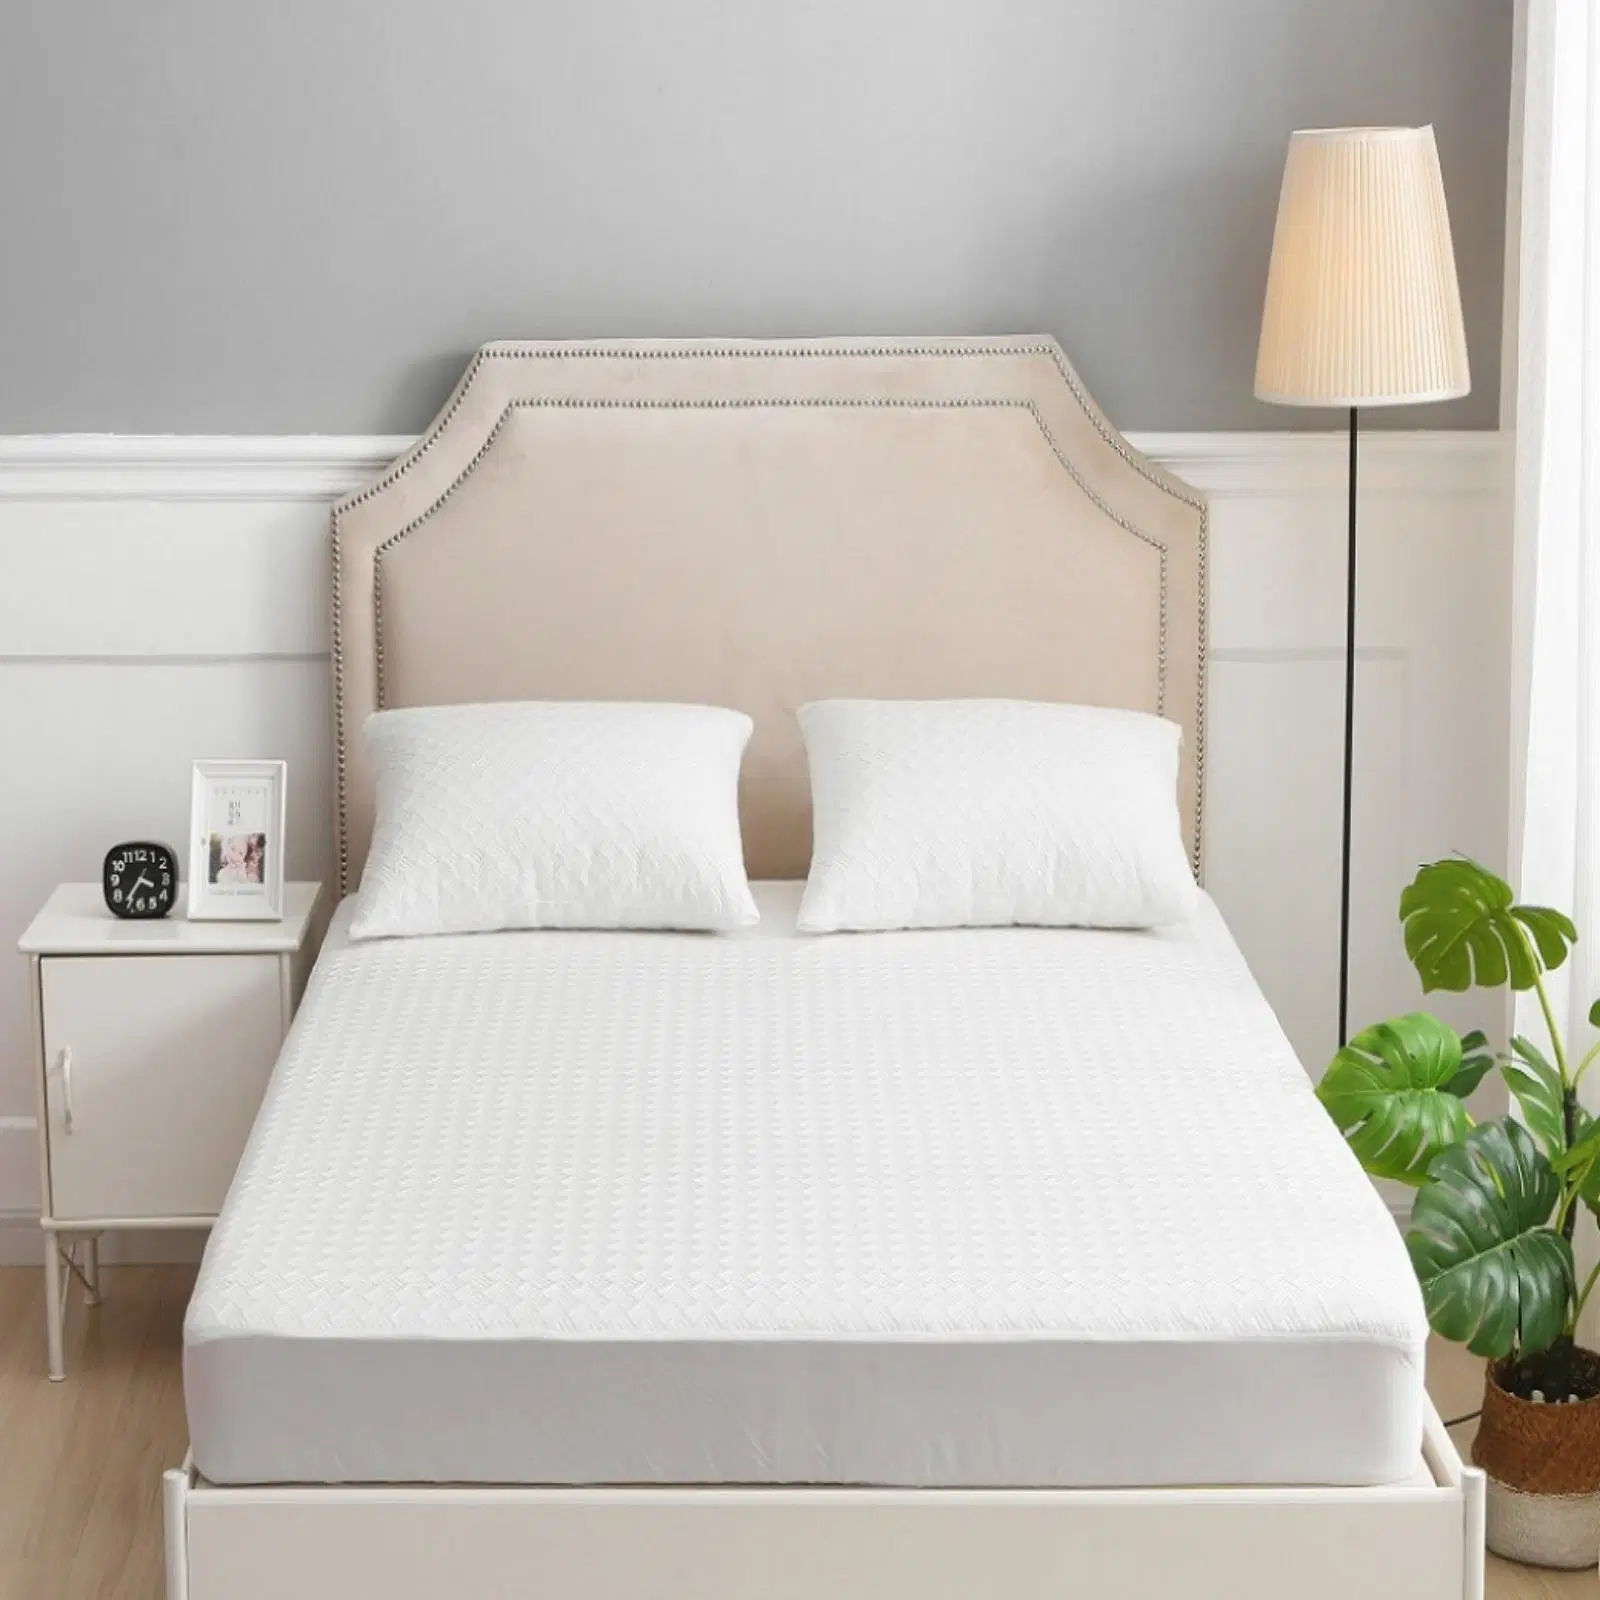 Tela a medida funda impermeable colchón transpirable cama Bug colchón Protector